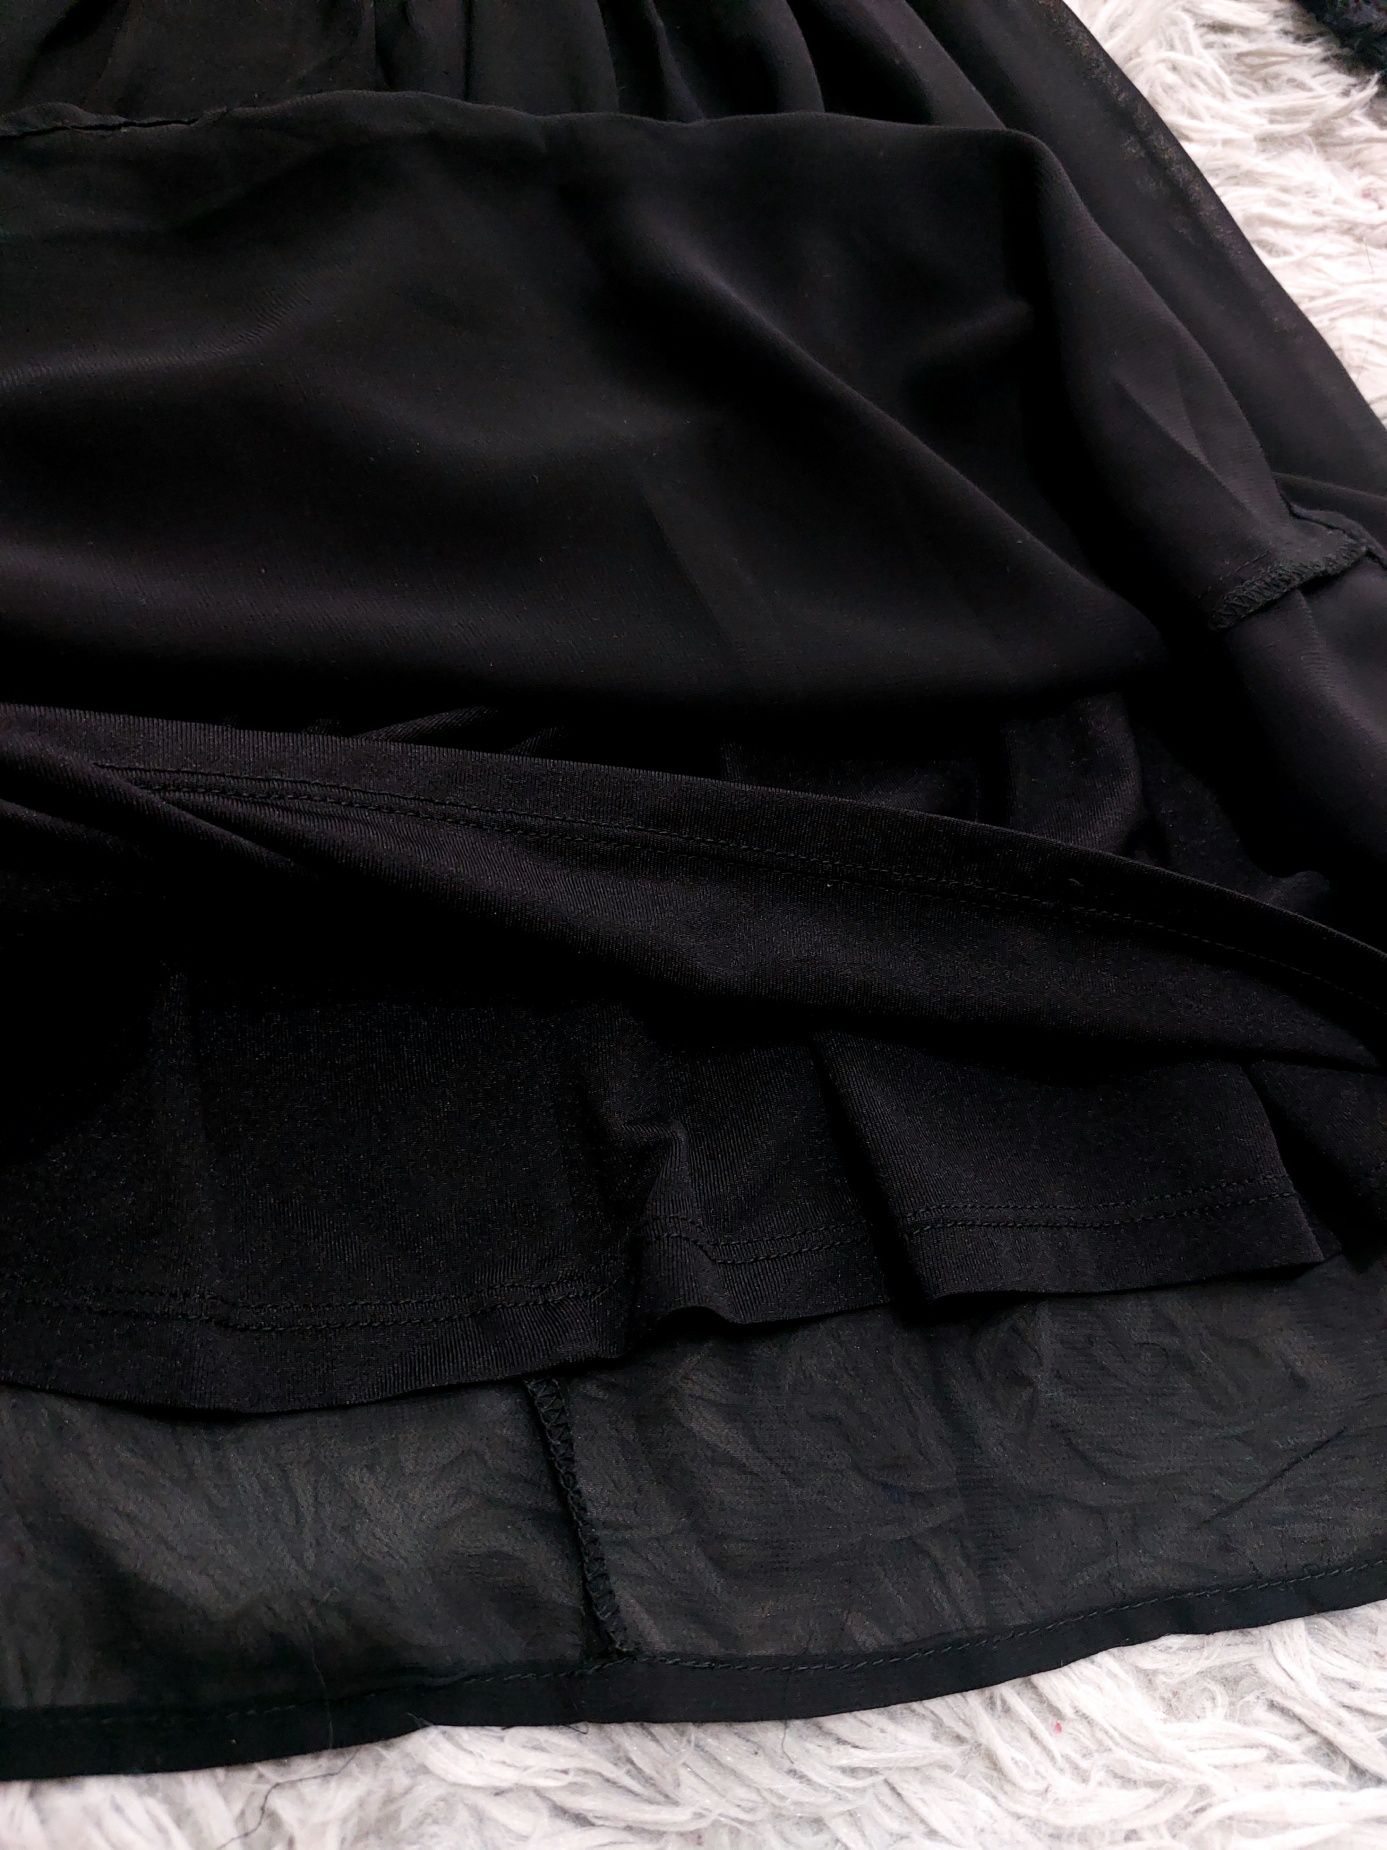 Детское чёрное платье,венсдей, Wednesday.Платье.